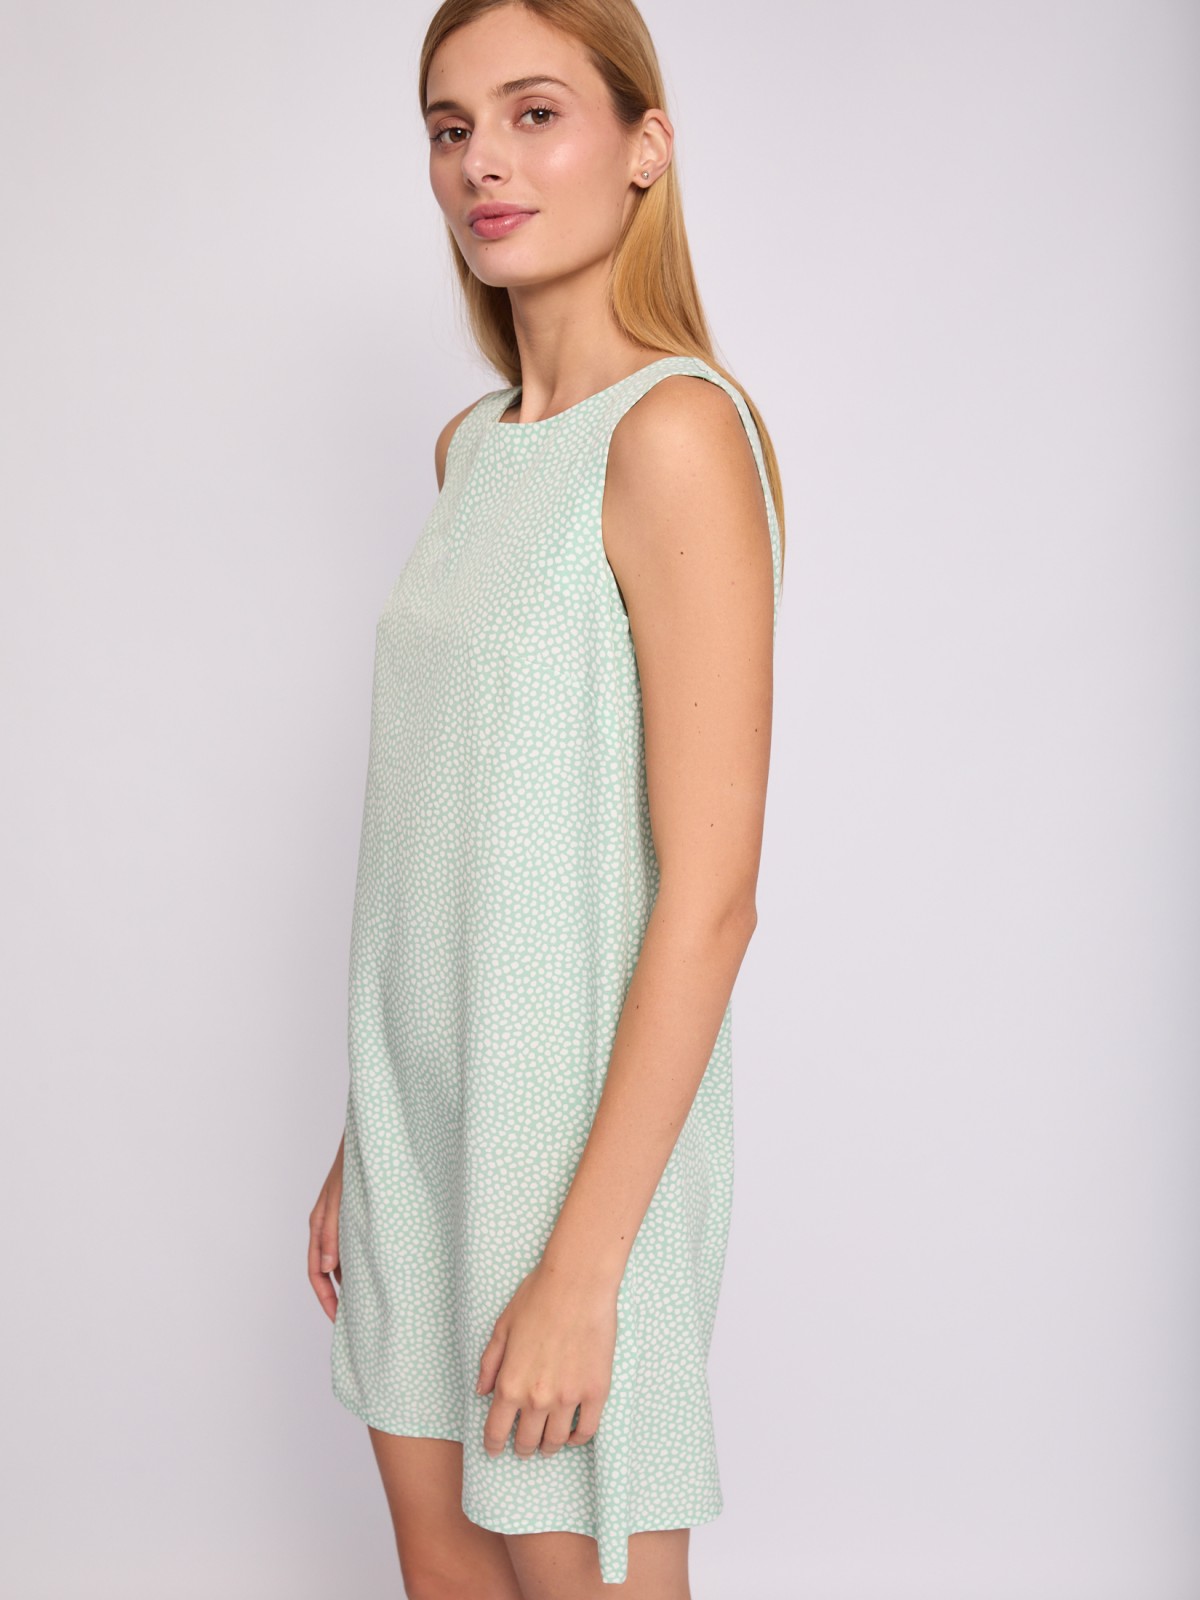 Платье мини без рукавов с вырезом на спине zolla 024238262232, цвет светло-зеленый, размер XS - фото 4